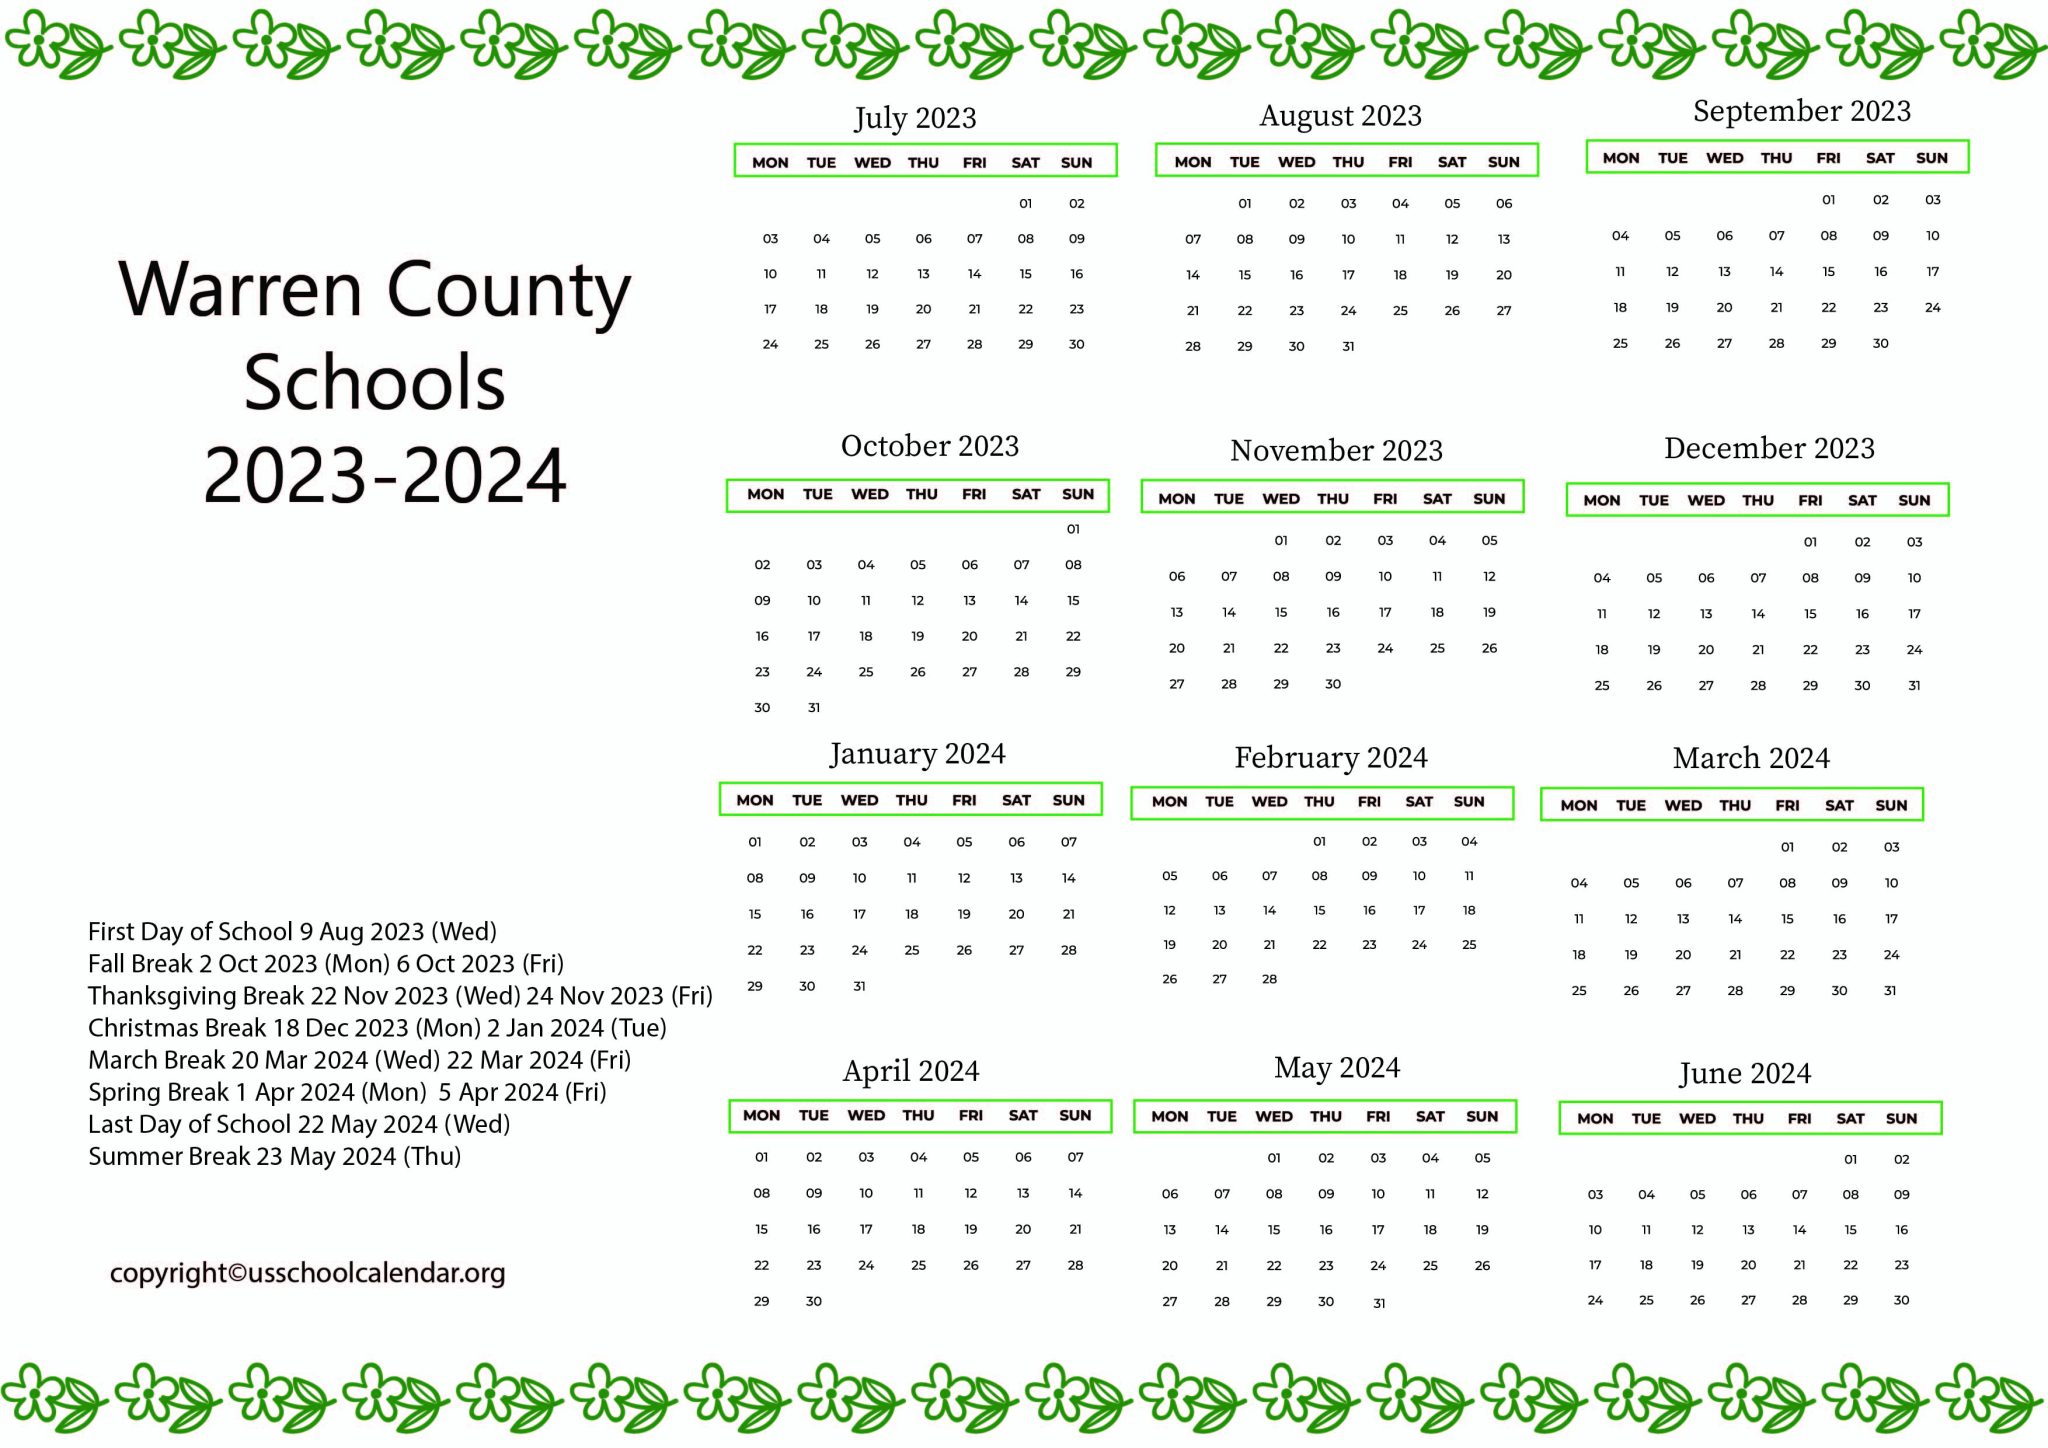 Warren County Schools Calendar with Holidays 2023 2024